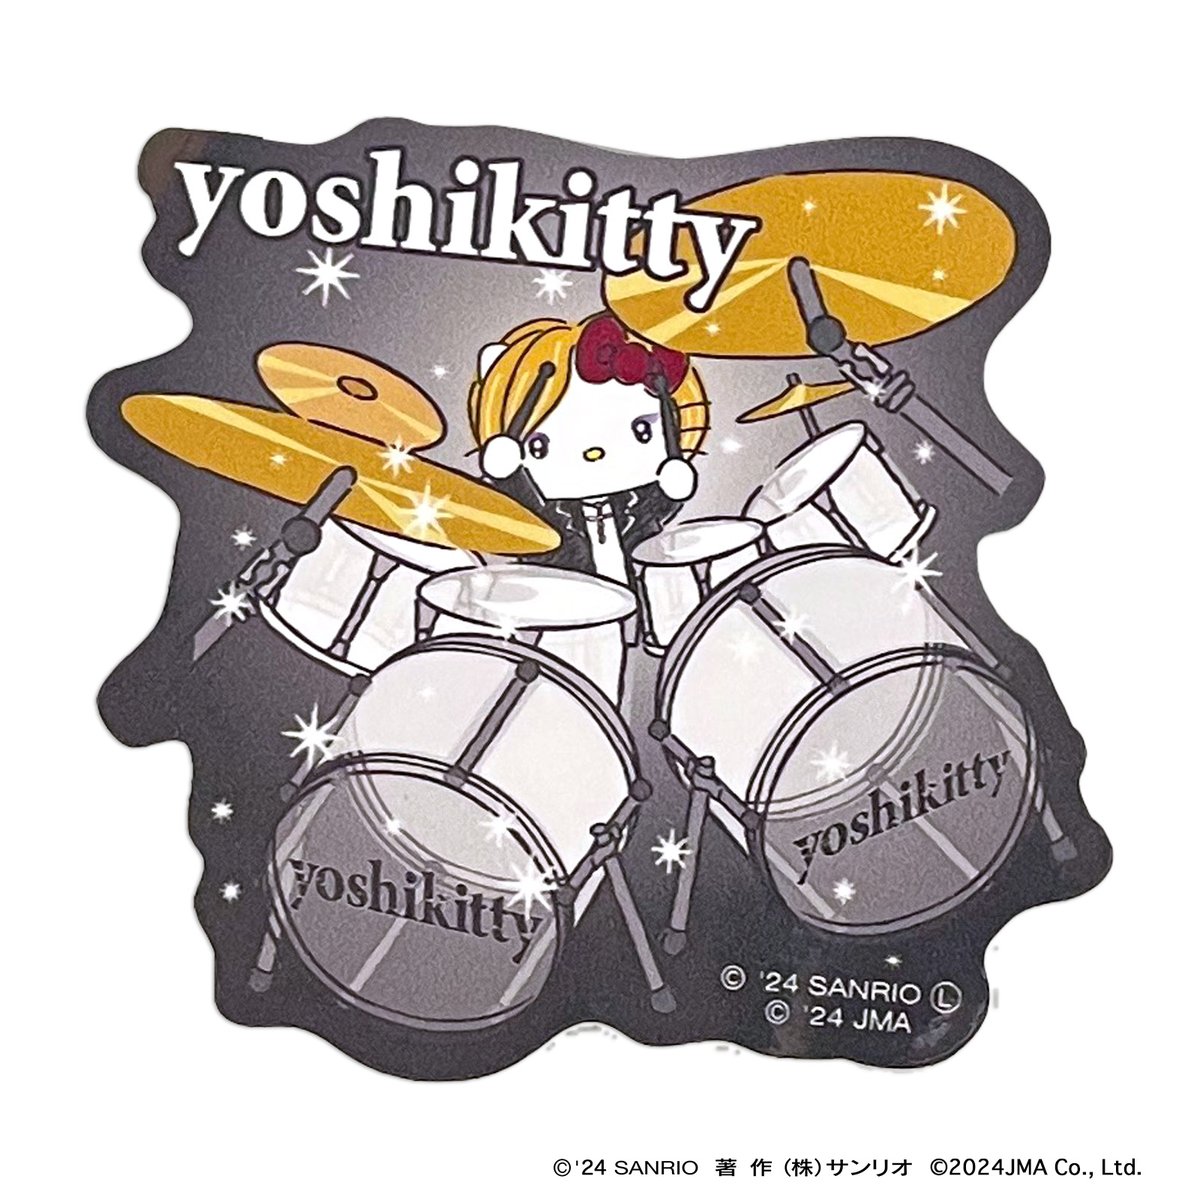 ⭐タフステッカー ドラム ⭐ 髪型を変えてよりクールになったyoshikitty新デザインのステッカー！熱いドラム演奏姿がカッコイイ！！ ☆ポイントを獲得してyoshikittyを応援！ 詳しくはコチラ asunaro.shop-pro.jp/?pid=179715340 @YoshikiOfficial #yoshikitty #yoshiki #xjapan #サンリオキャラクター大賞